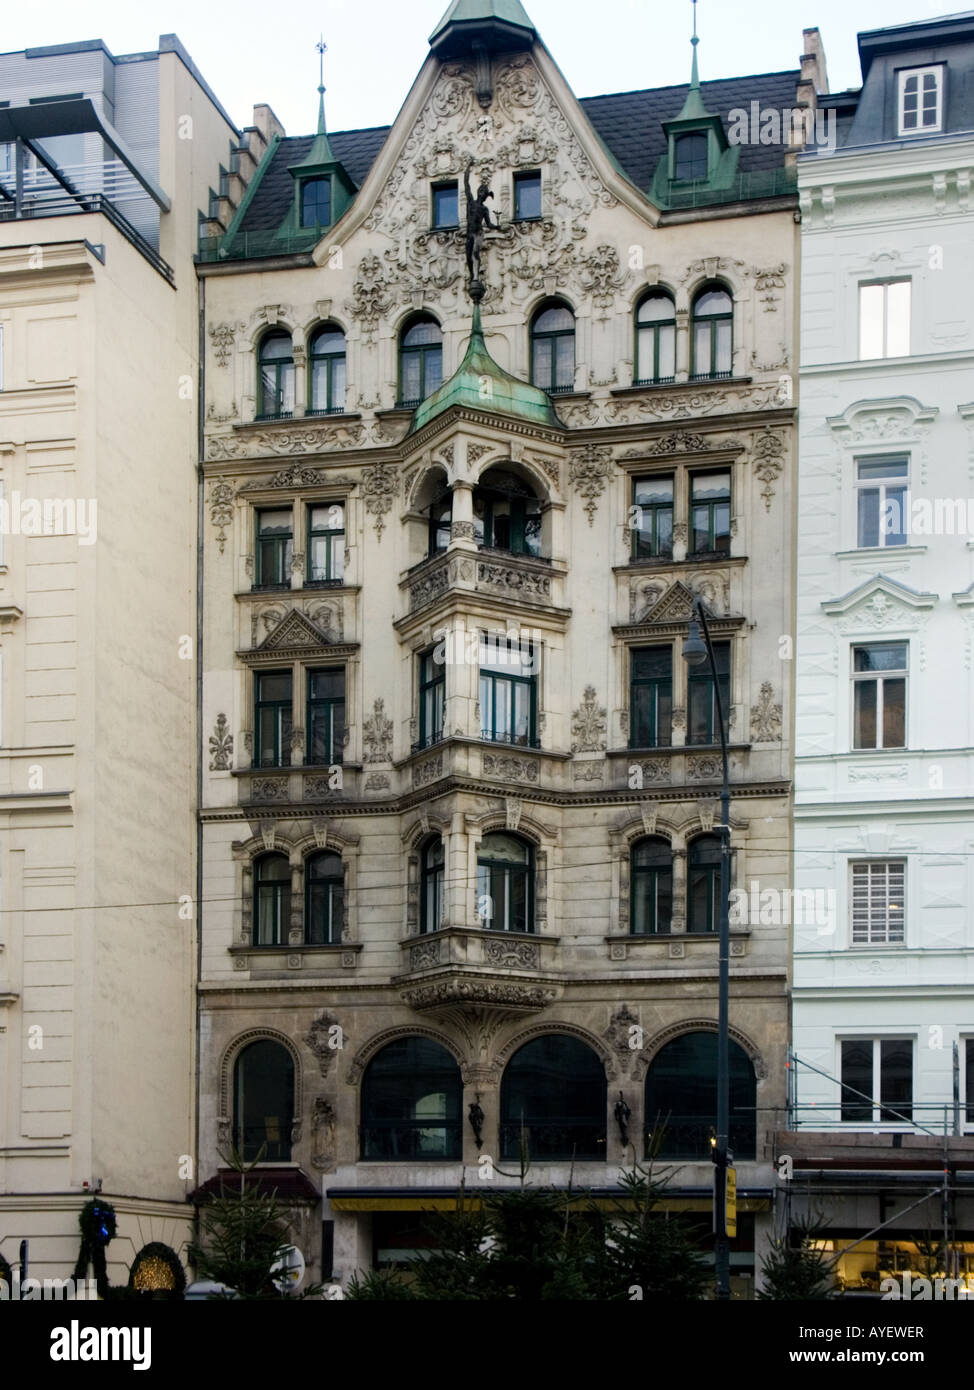 Jugendstil (Art Nouveau) Fassade in Neuer Markt, Wien, Österreich  Stockfotografie - Alamy